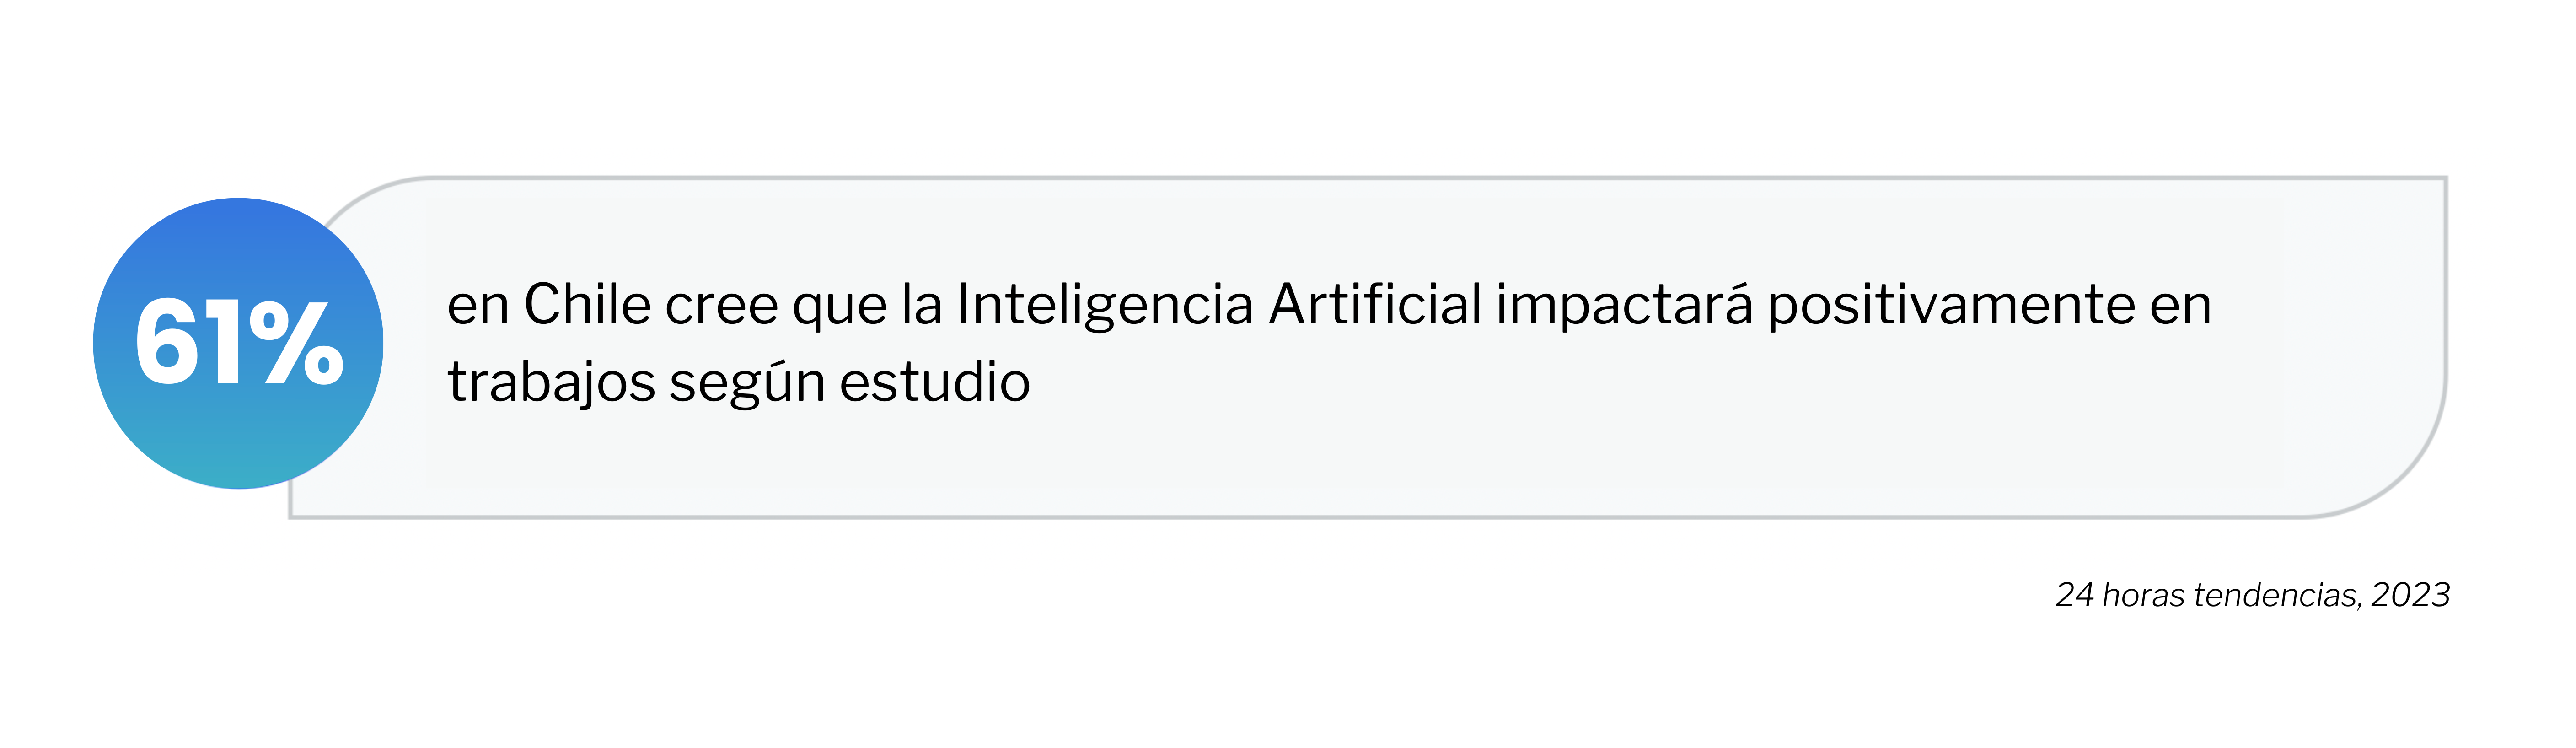 Porcentaje de uso de la IA en Chile